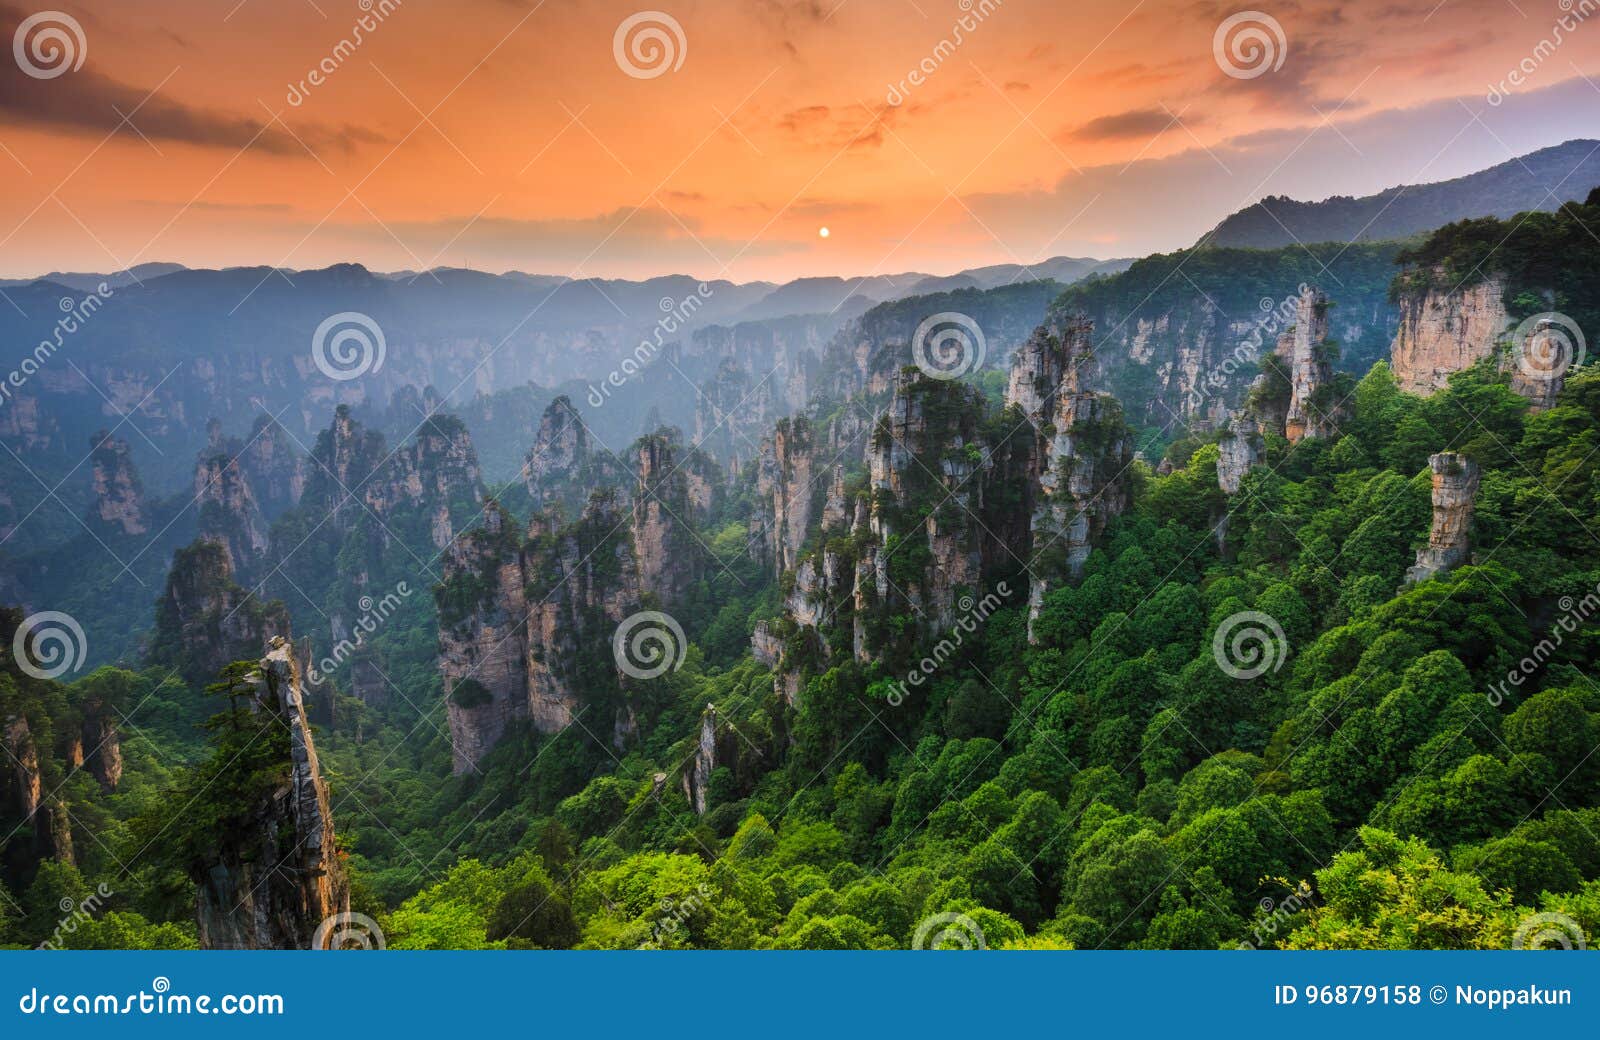 zhangjiajie national forest park at sunset, wulingyuan, hunan,